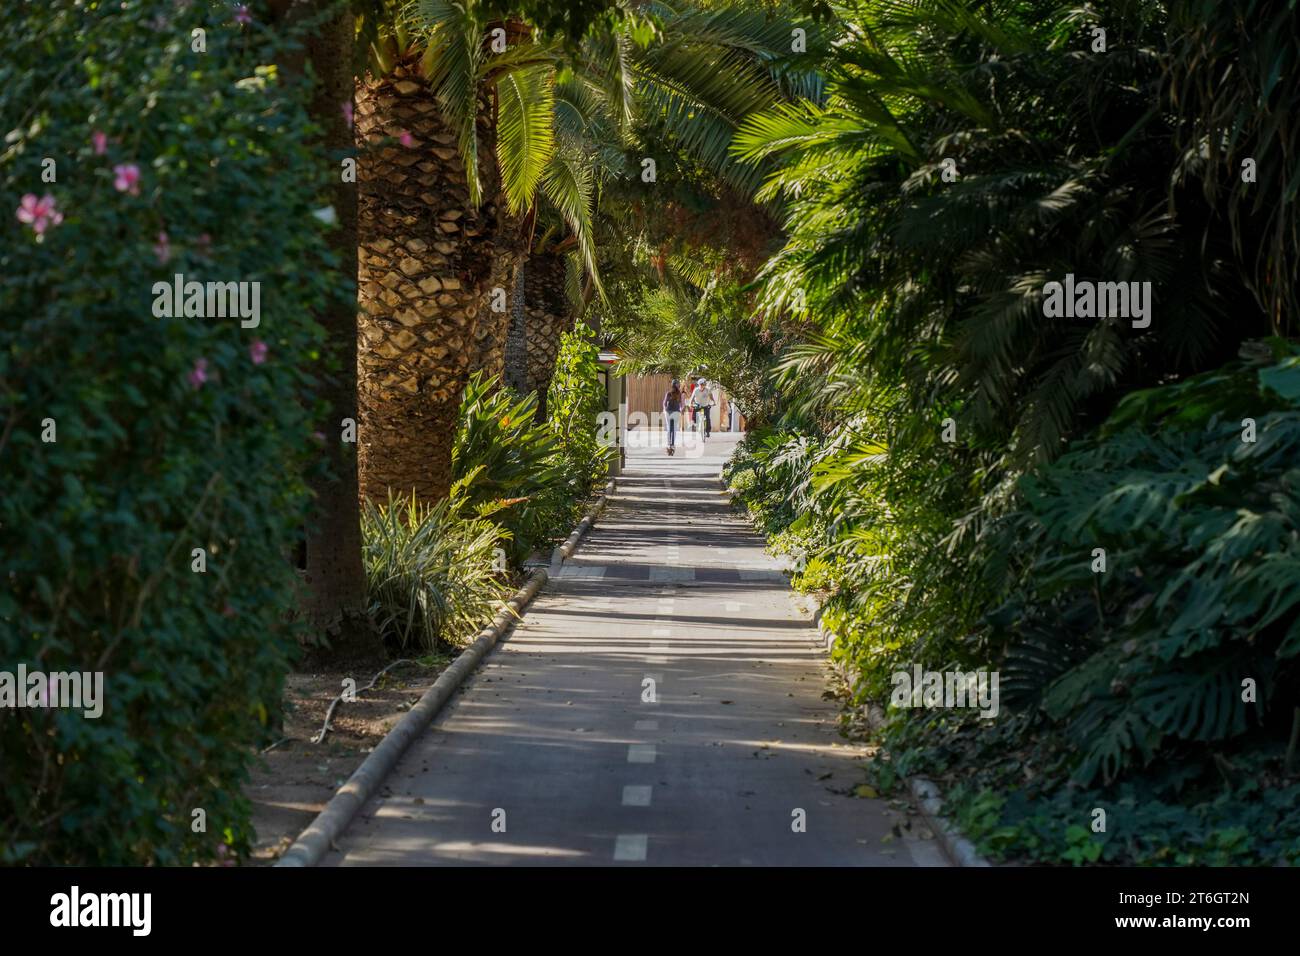 Piste cyclable à travers le parc municipal de Malaga, Costa del sol, Malaga, Costa del sol, Andalousie, Espagne. Banque D'Images